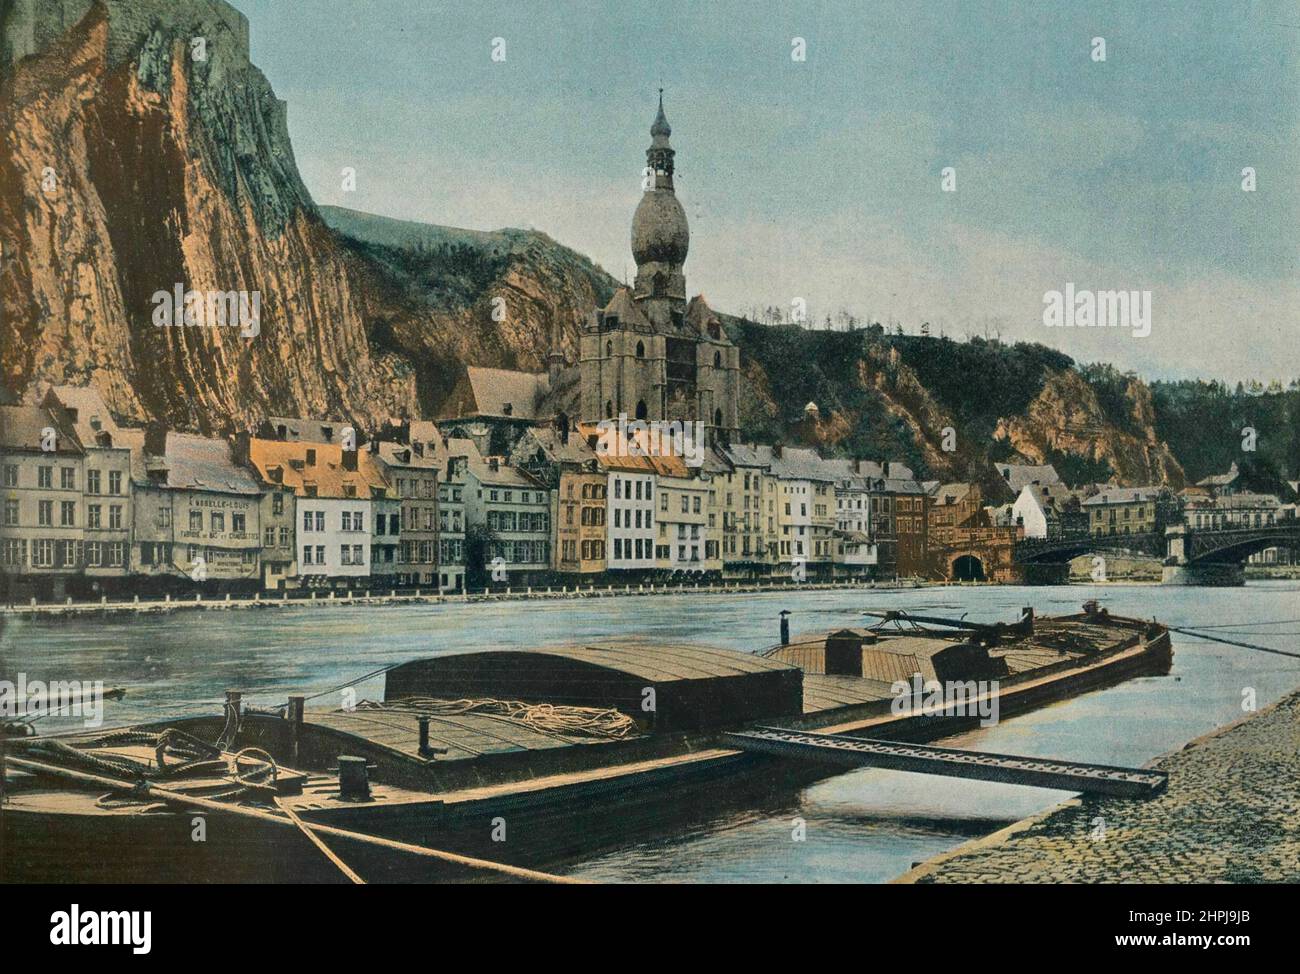 Dinant Autour Du Monde En Belgique 1895 - 1900  (6)  - 19 th century french colored photography print Stock Photo